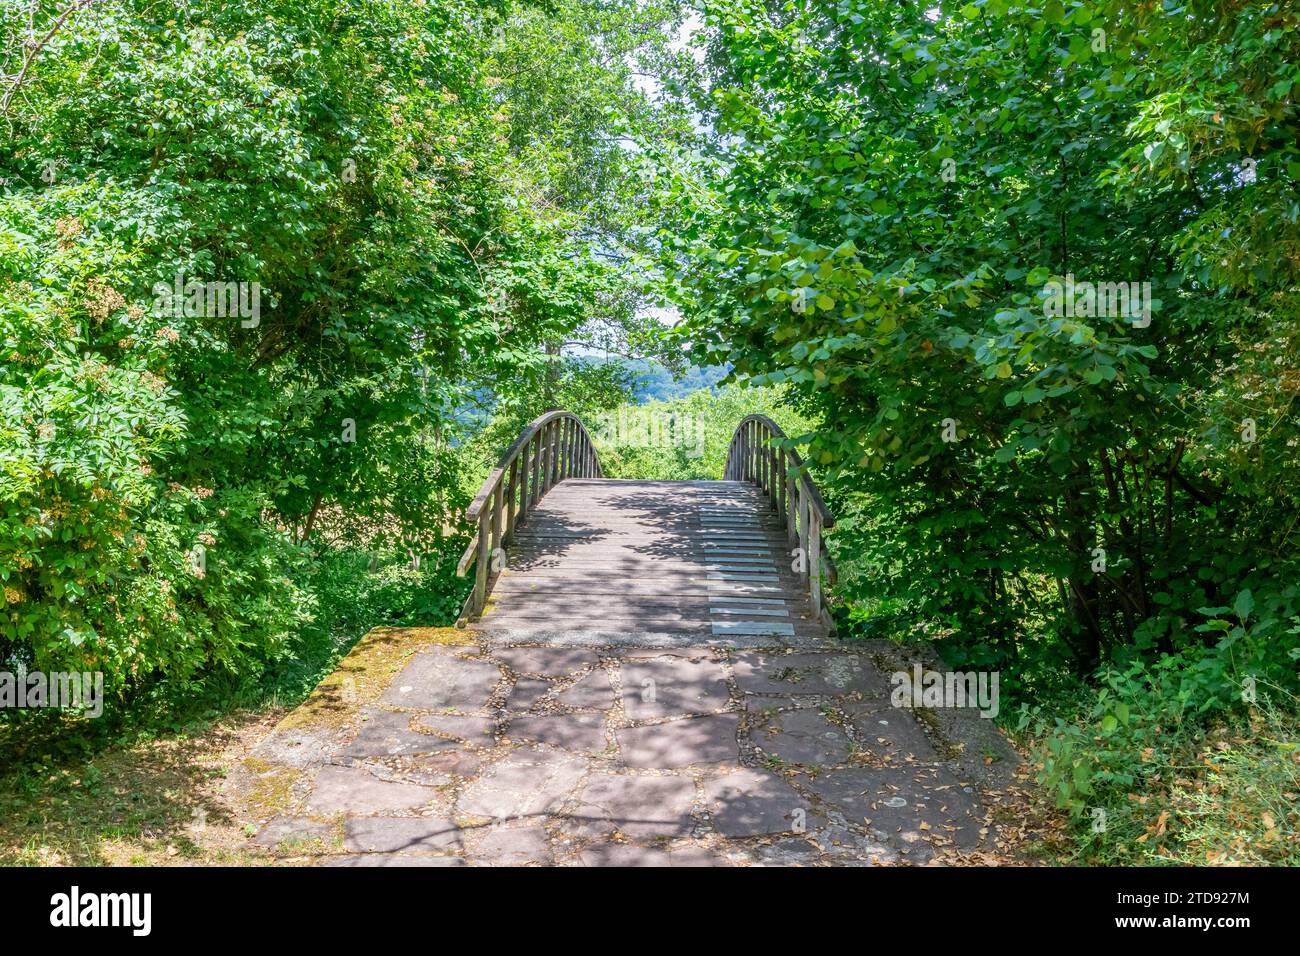 Sentiero in pietra che conduce ad un ponte ad arco in legno tra fogliame di alberi verdi, sfondo nebbioso, soleggiata giornata primaverile nella riserva naturale di Echternach, Lux Foto Stock